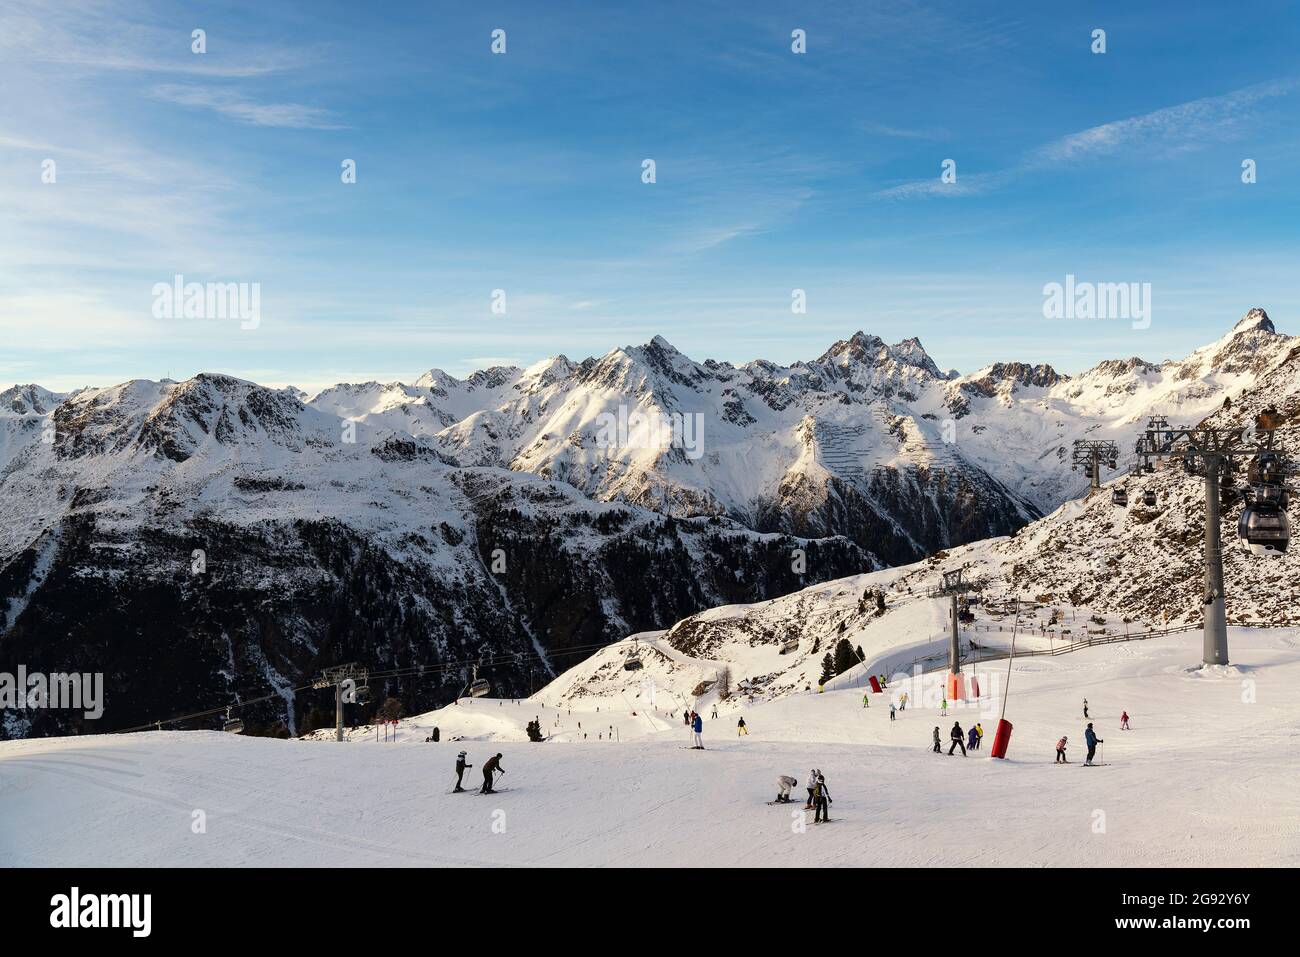 Panorama of the Austrian ski resort of Ischgl. Stock Photo